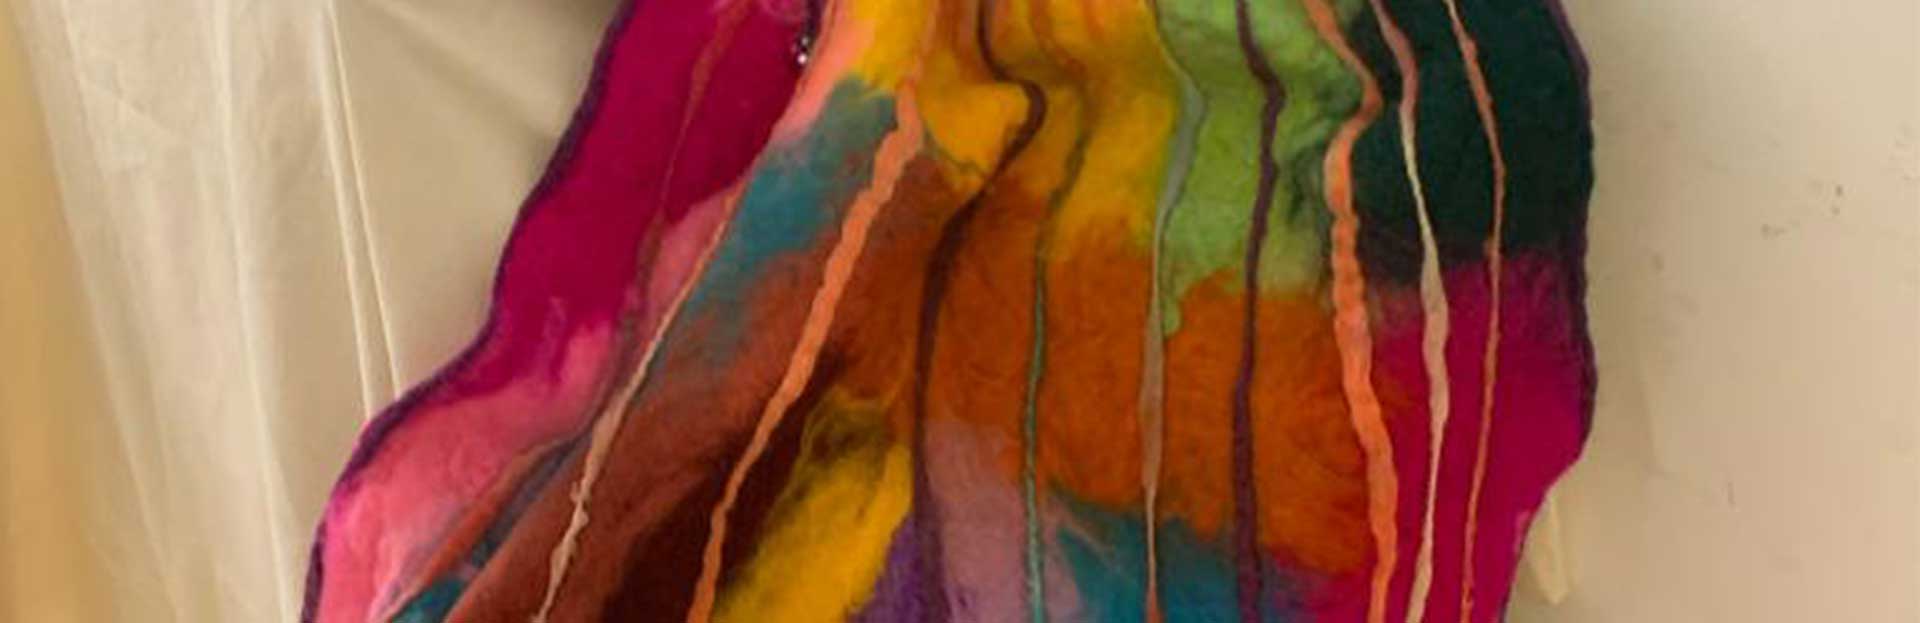 Posgrado: charla informativa para la carrera Prácticas Artísticas Textiles Contemporáneas